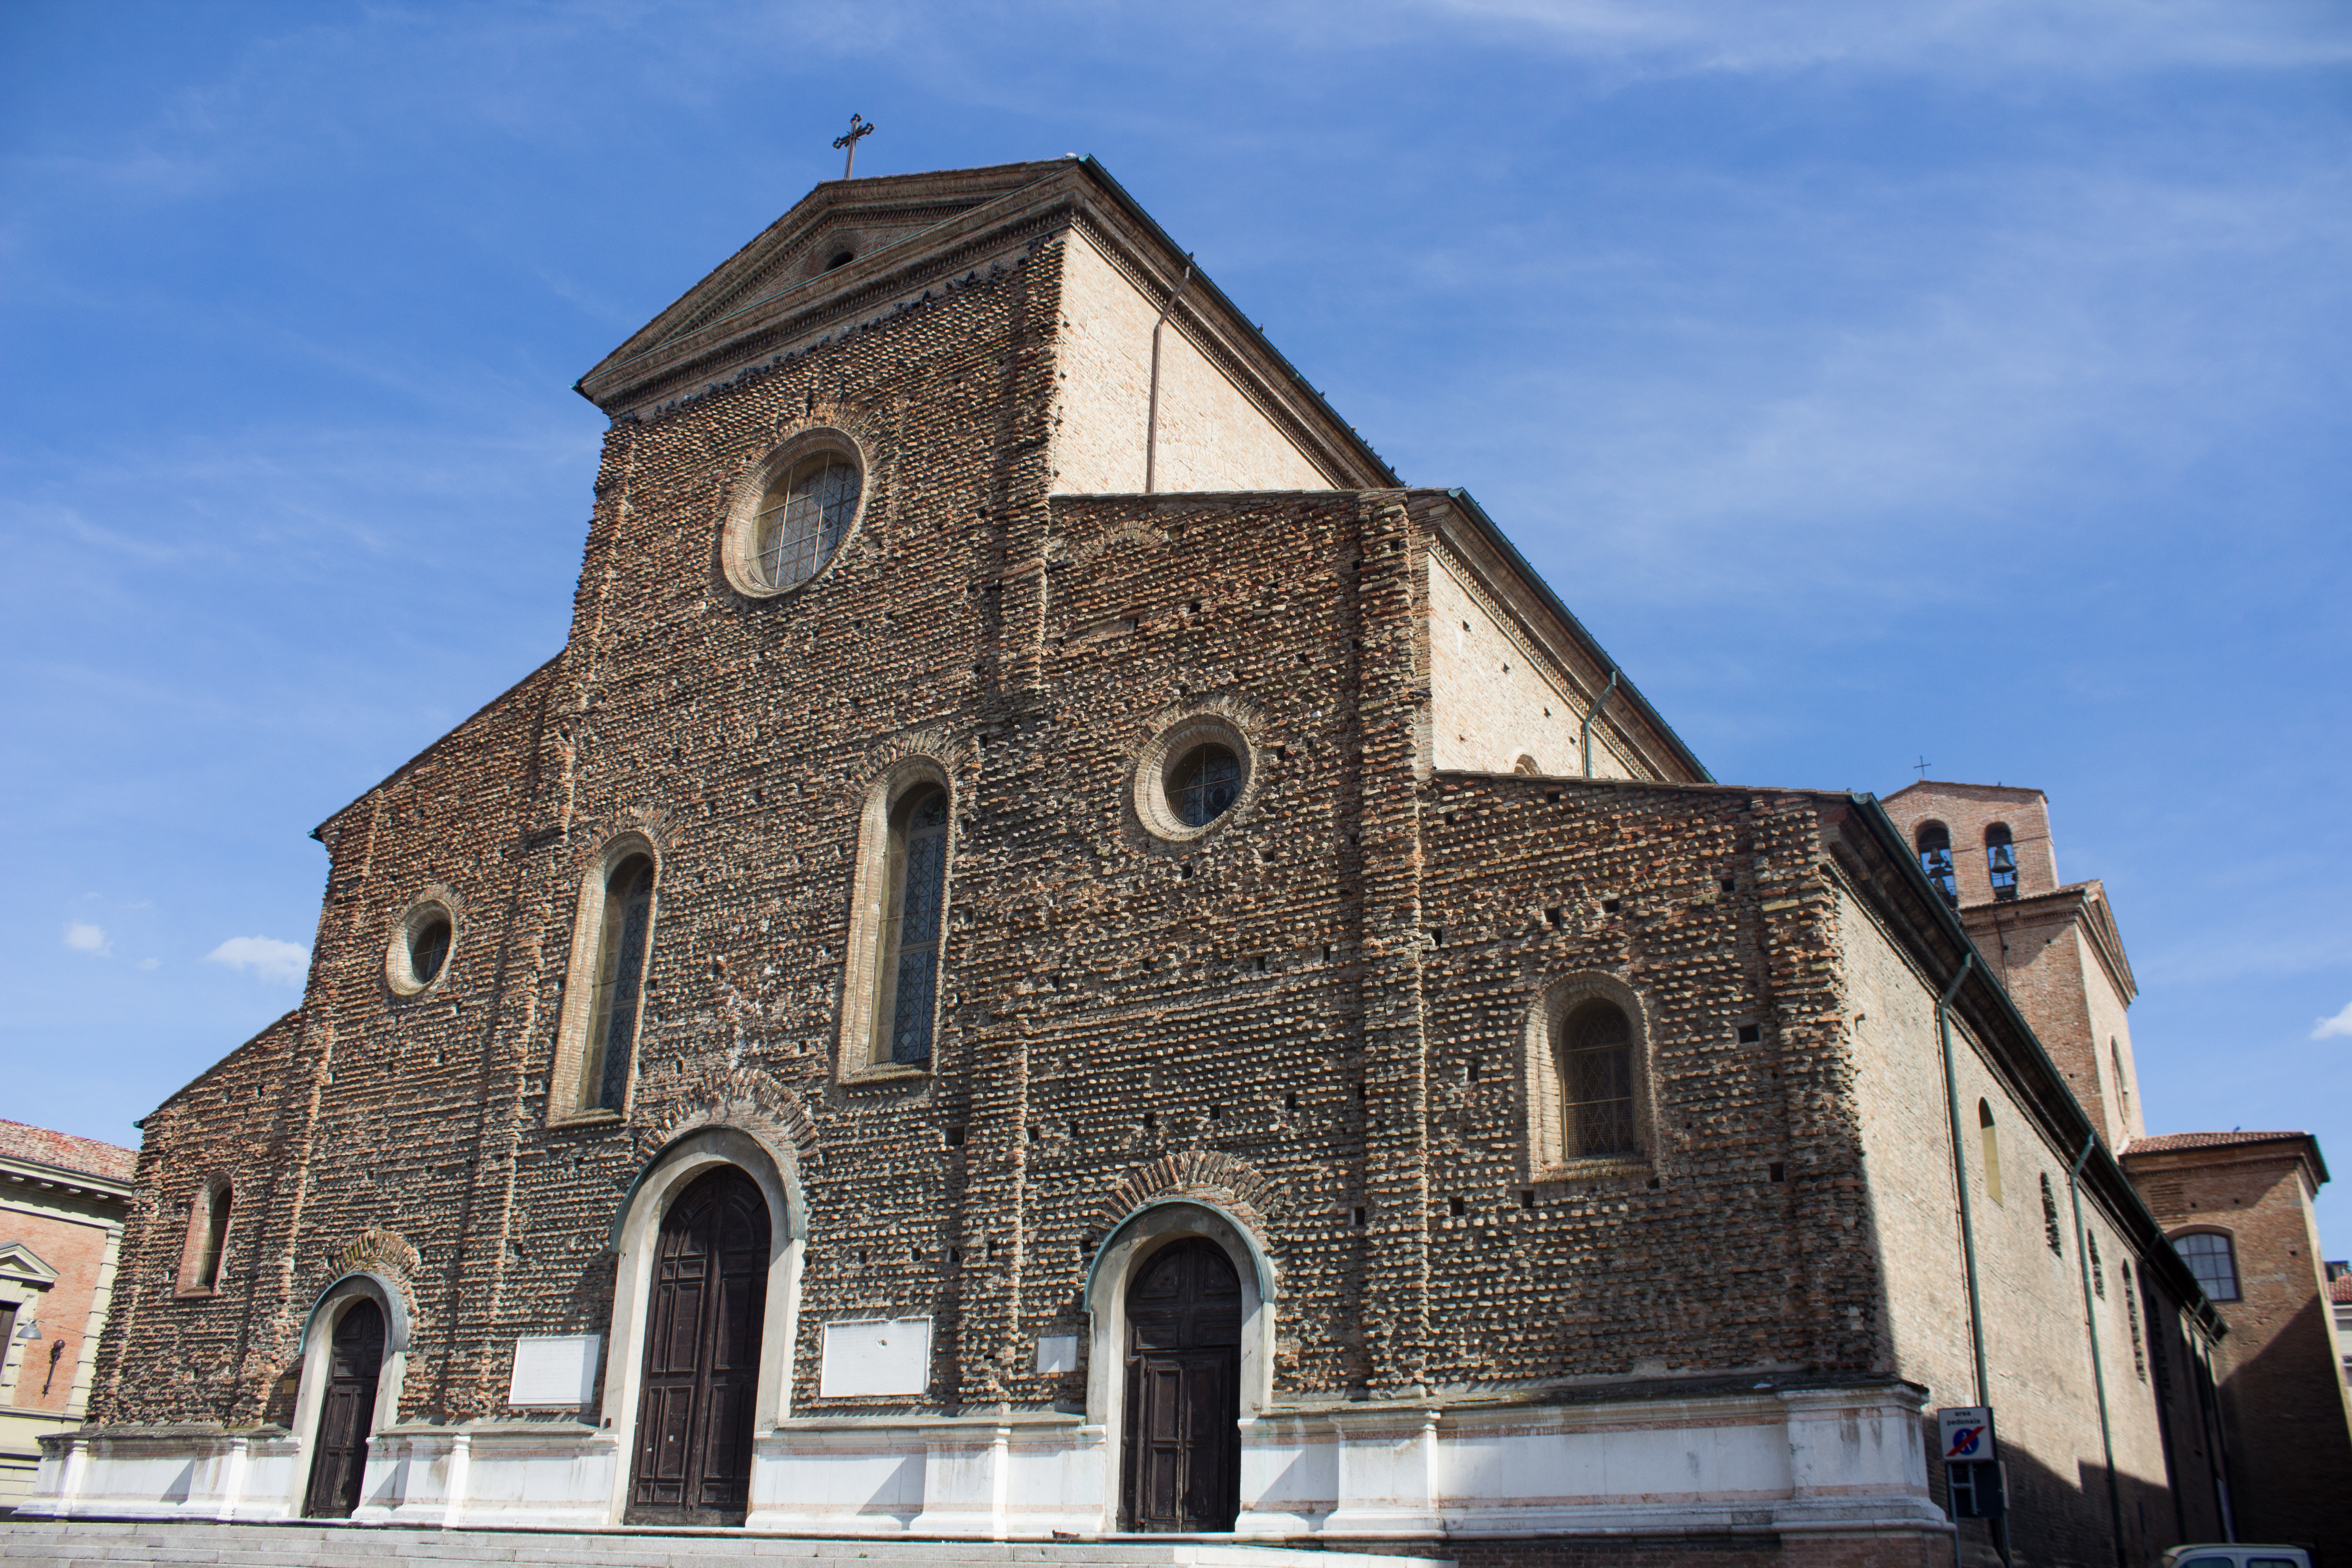 photo: https://upload.wikimedia.org/wikipedia/commons/4/47/Facciata_della_cattedrale_di_San_Pietro_Apostolo.jpg